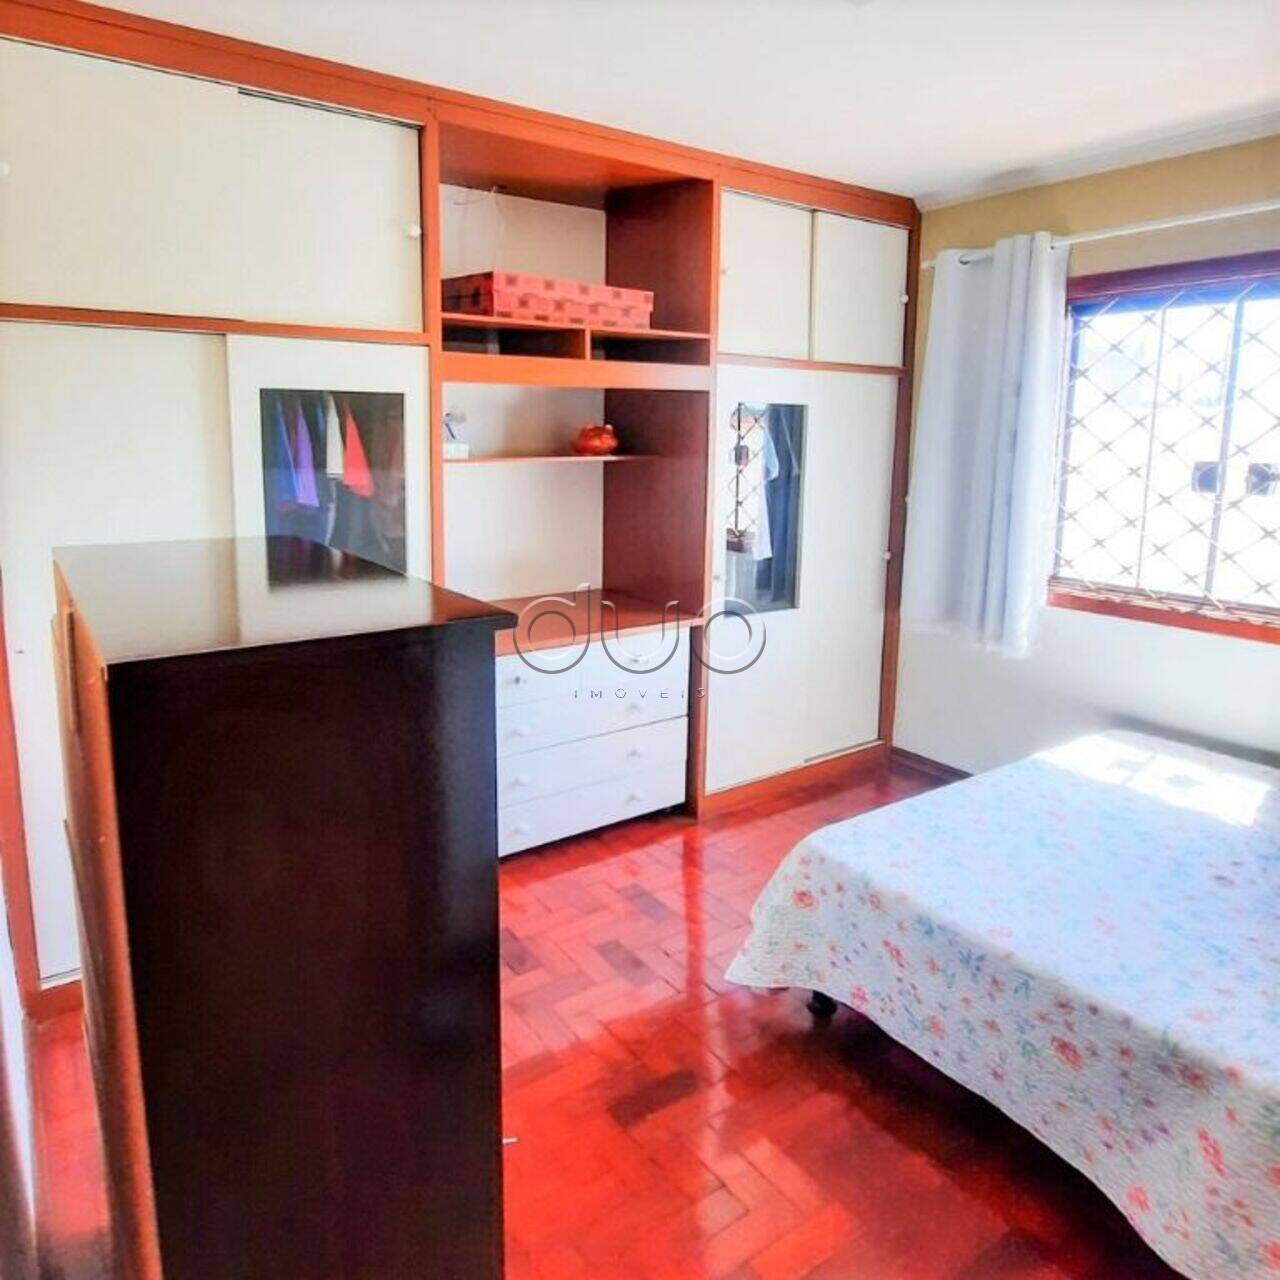 Casa com 3 dormitórios à venda, 120 m² por R$ 450.000 - Parque dos Sabiás - Piracicaba/SP